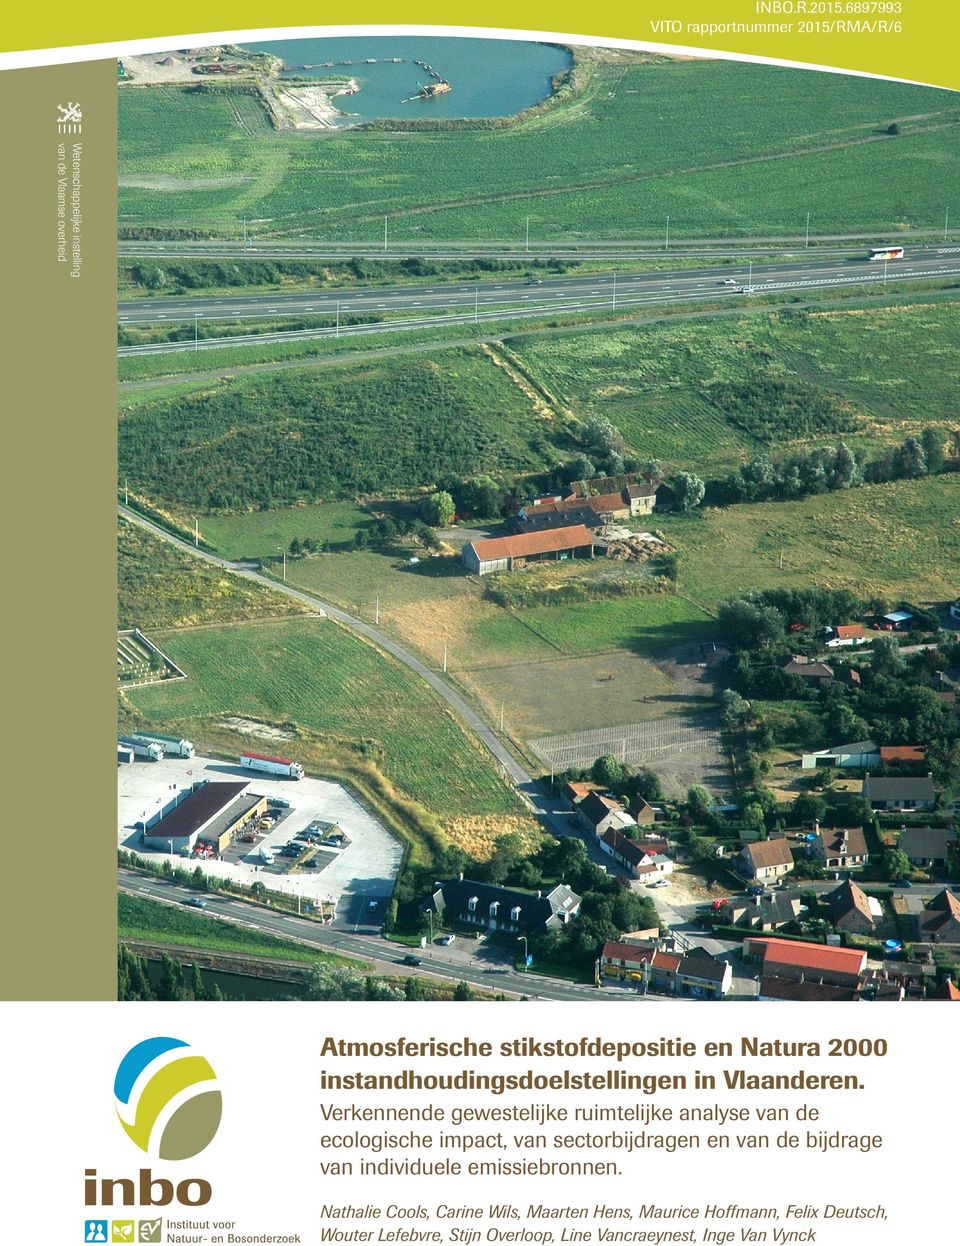 stikstofdepositie en Natura 2000 instandhoudingsdoelstellingen in Vlaanderen.